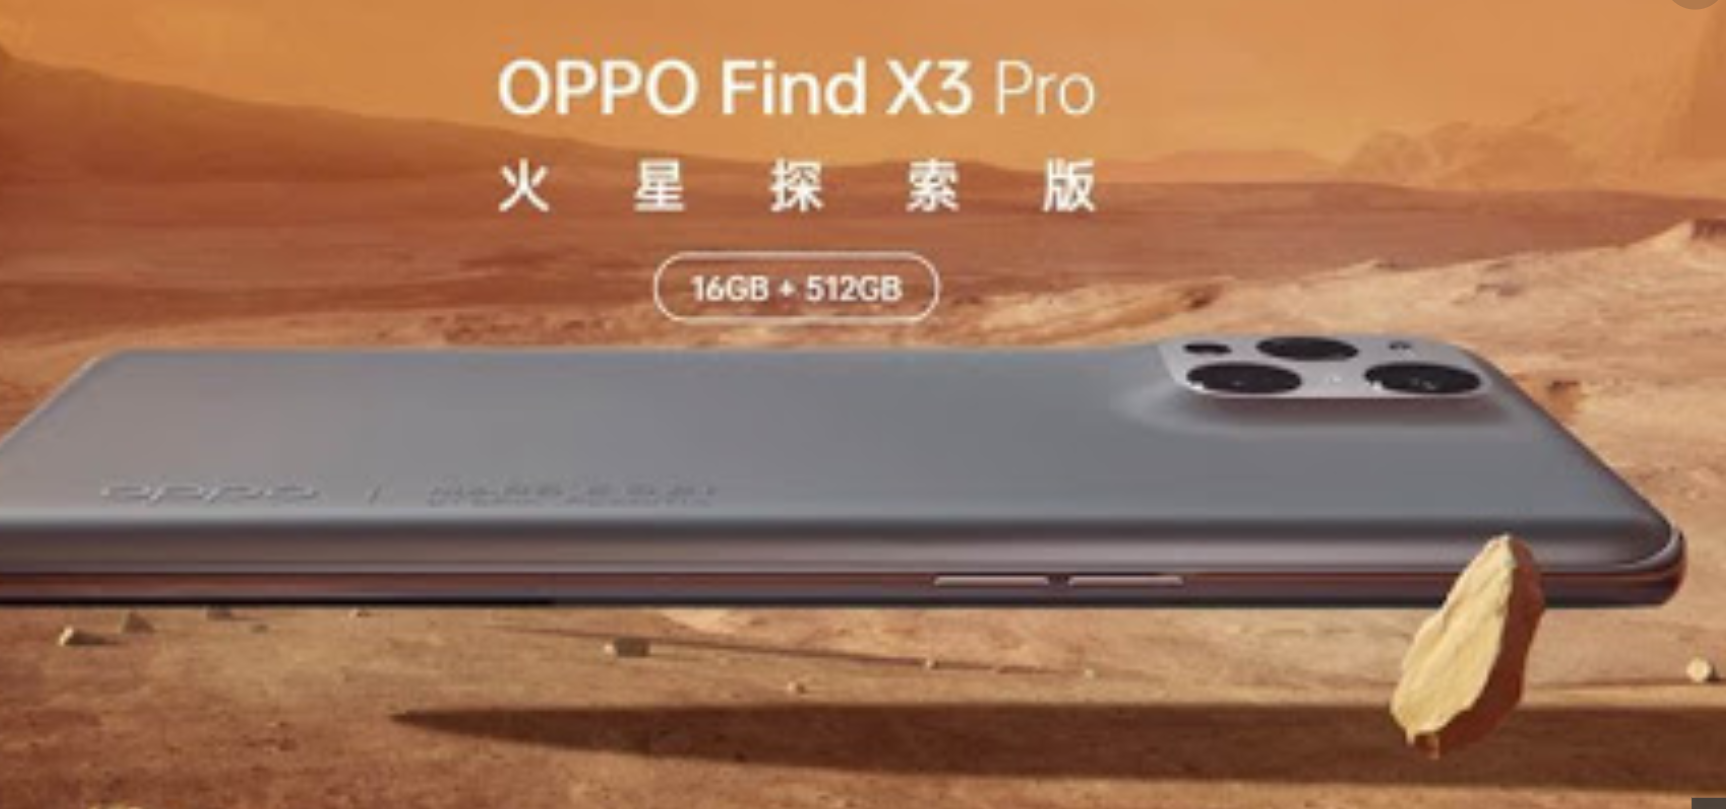 เจ้าแรกของโลก OPPO จับมือ Thales ให้บริการ eSIM 5G SA เริ่มติดตั้งเทคโนโลยีครั้งแรกผ่าน OPPO Find X3 Pro